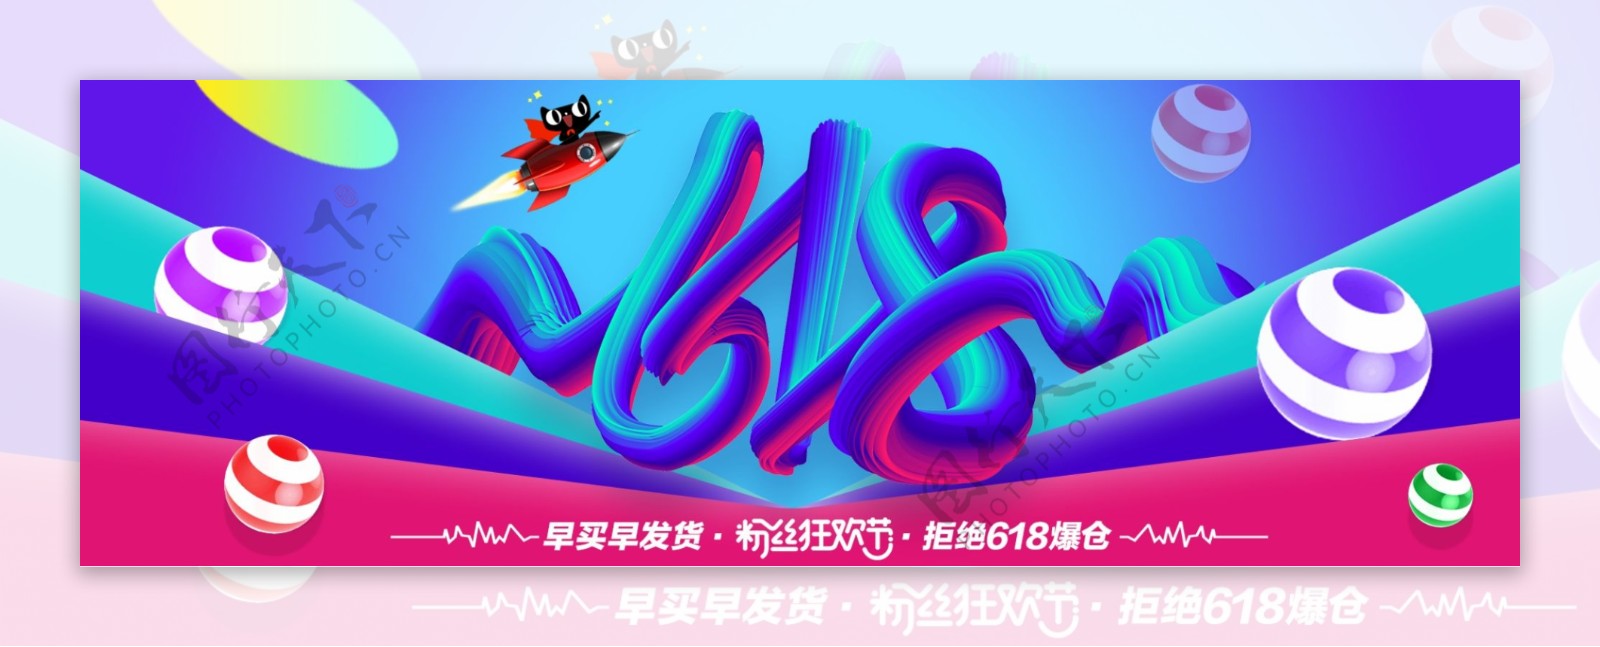 电商京东淘宝天猫618粉丝狂欢节全屏海报